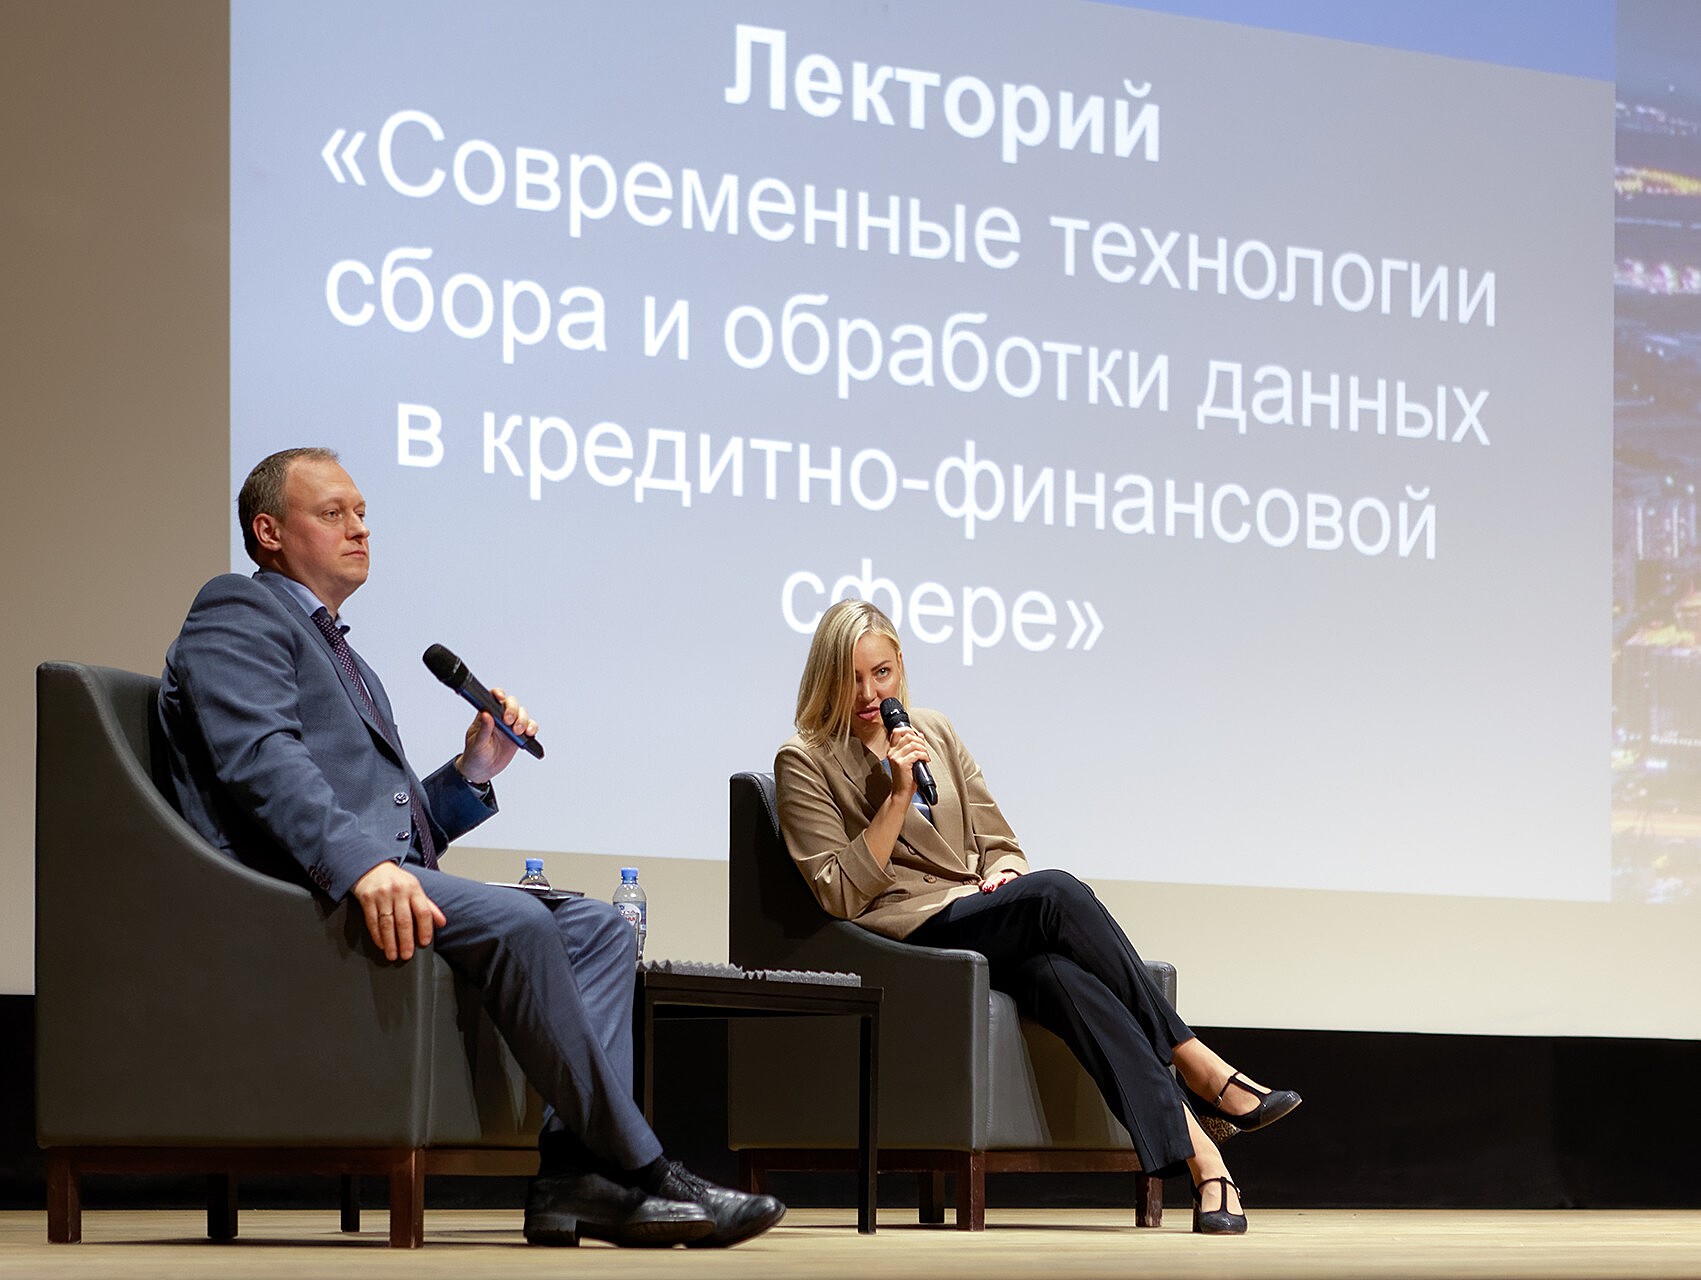 Банк России открыл в Твери лекционный курс по управлению данными в финансовой сфере